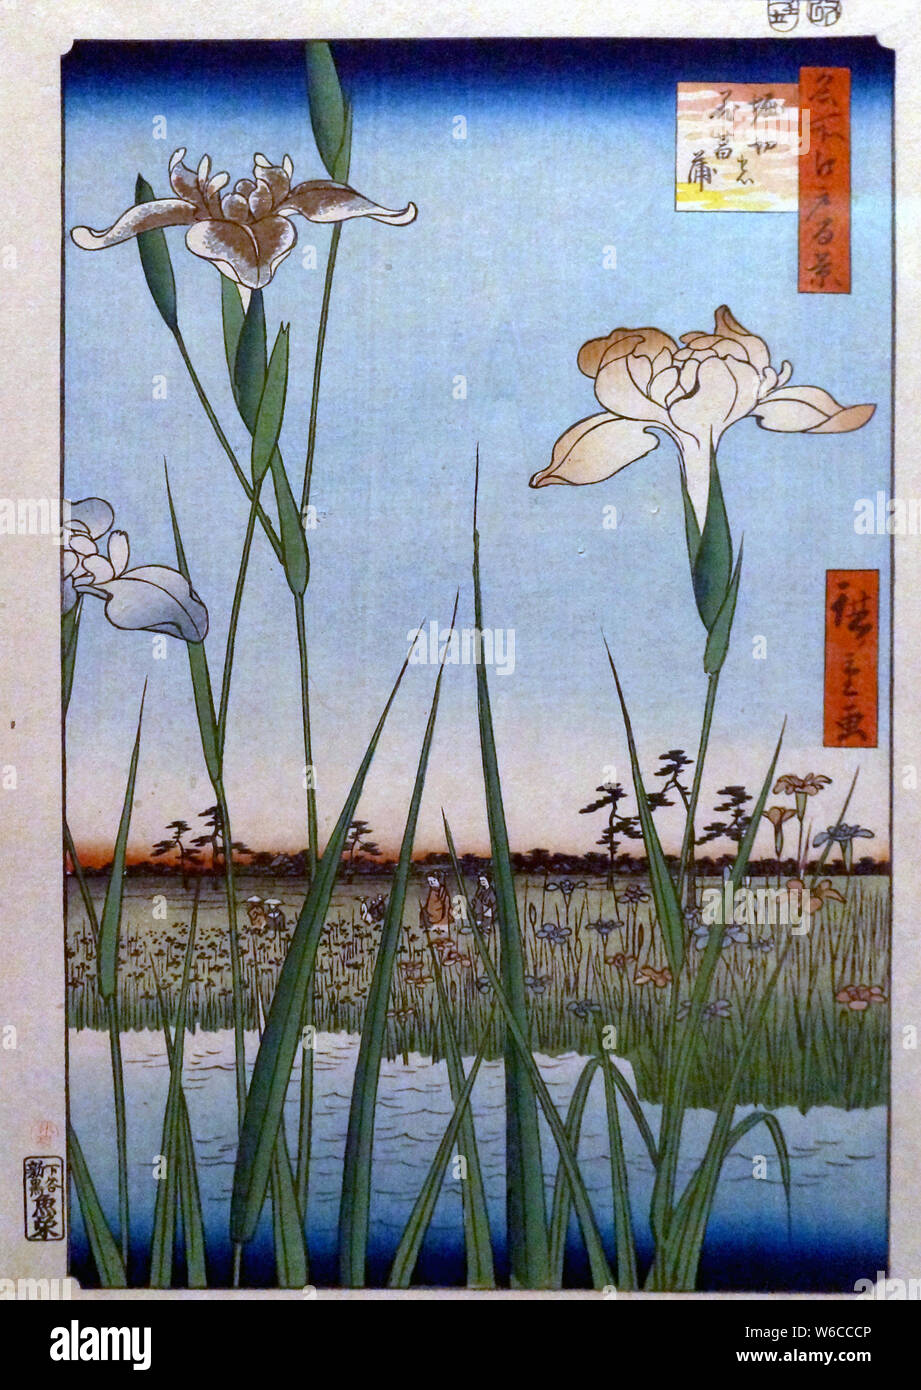 One Hundred Famous Views of Edo: Horikiri Iris Garden, woodblock print, by Utagawa Hiroshige, 1857 Stock Photo